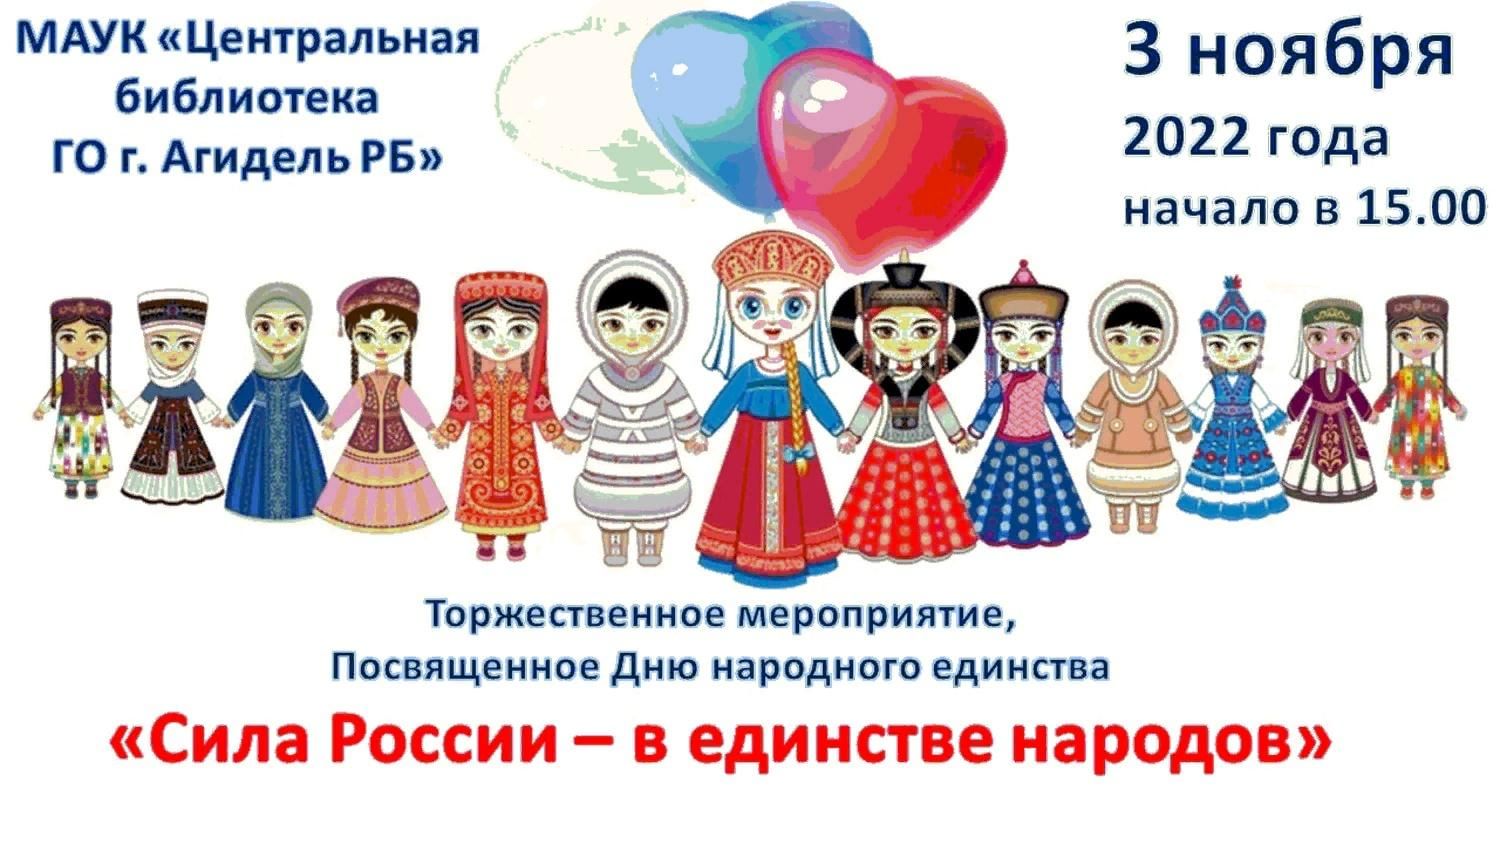 Народы РФ ко Дню народного единства